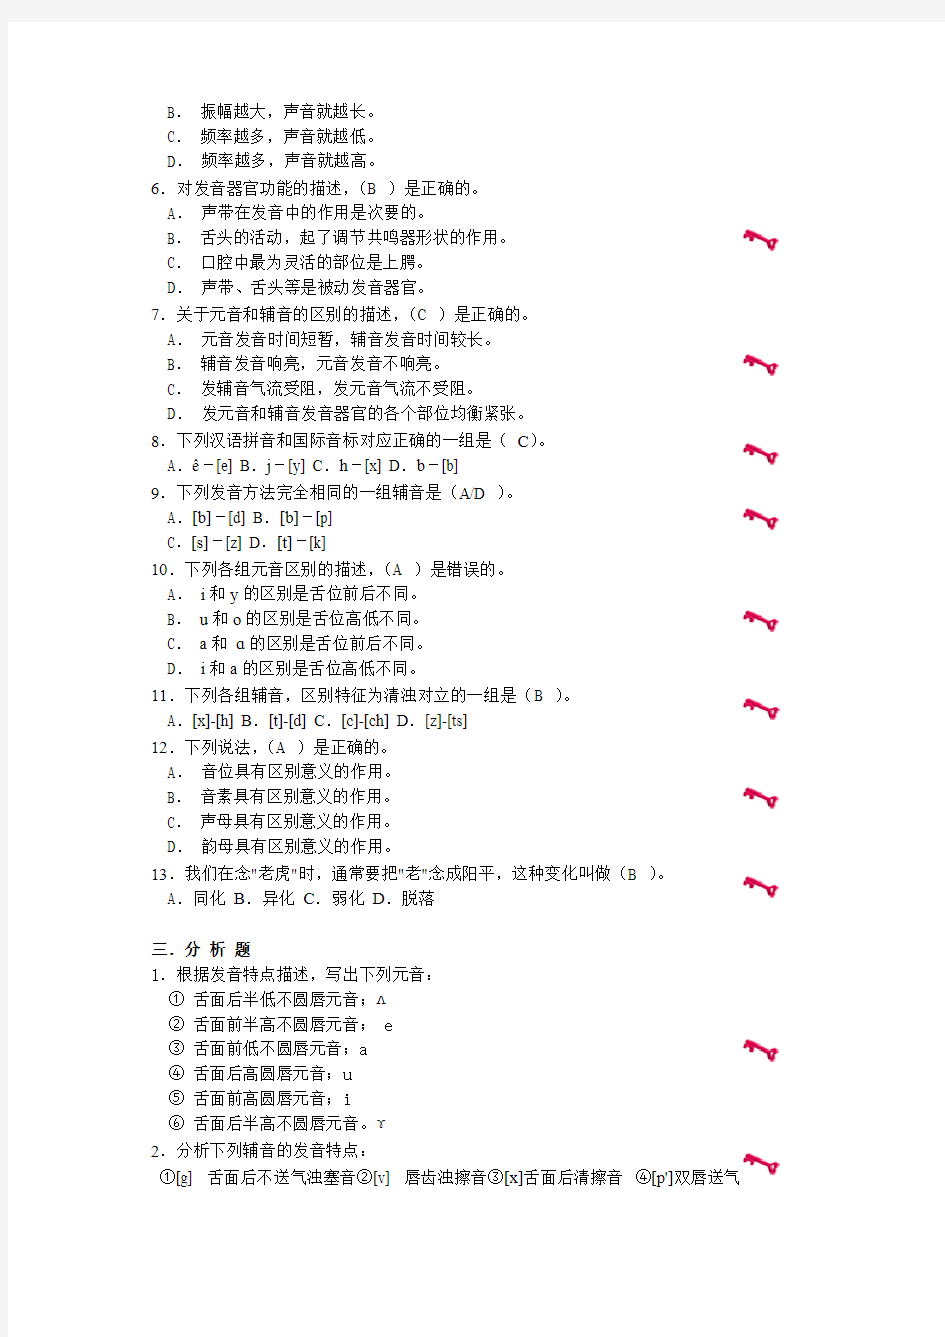 暨南大学现代汉语语音作业参考答案-推荐下载